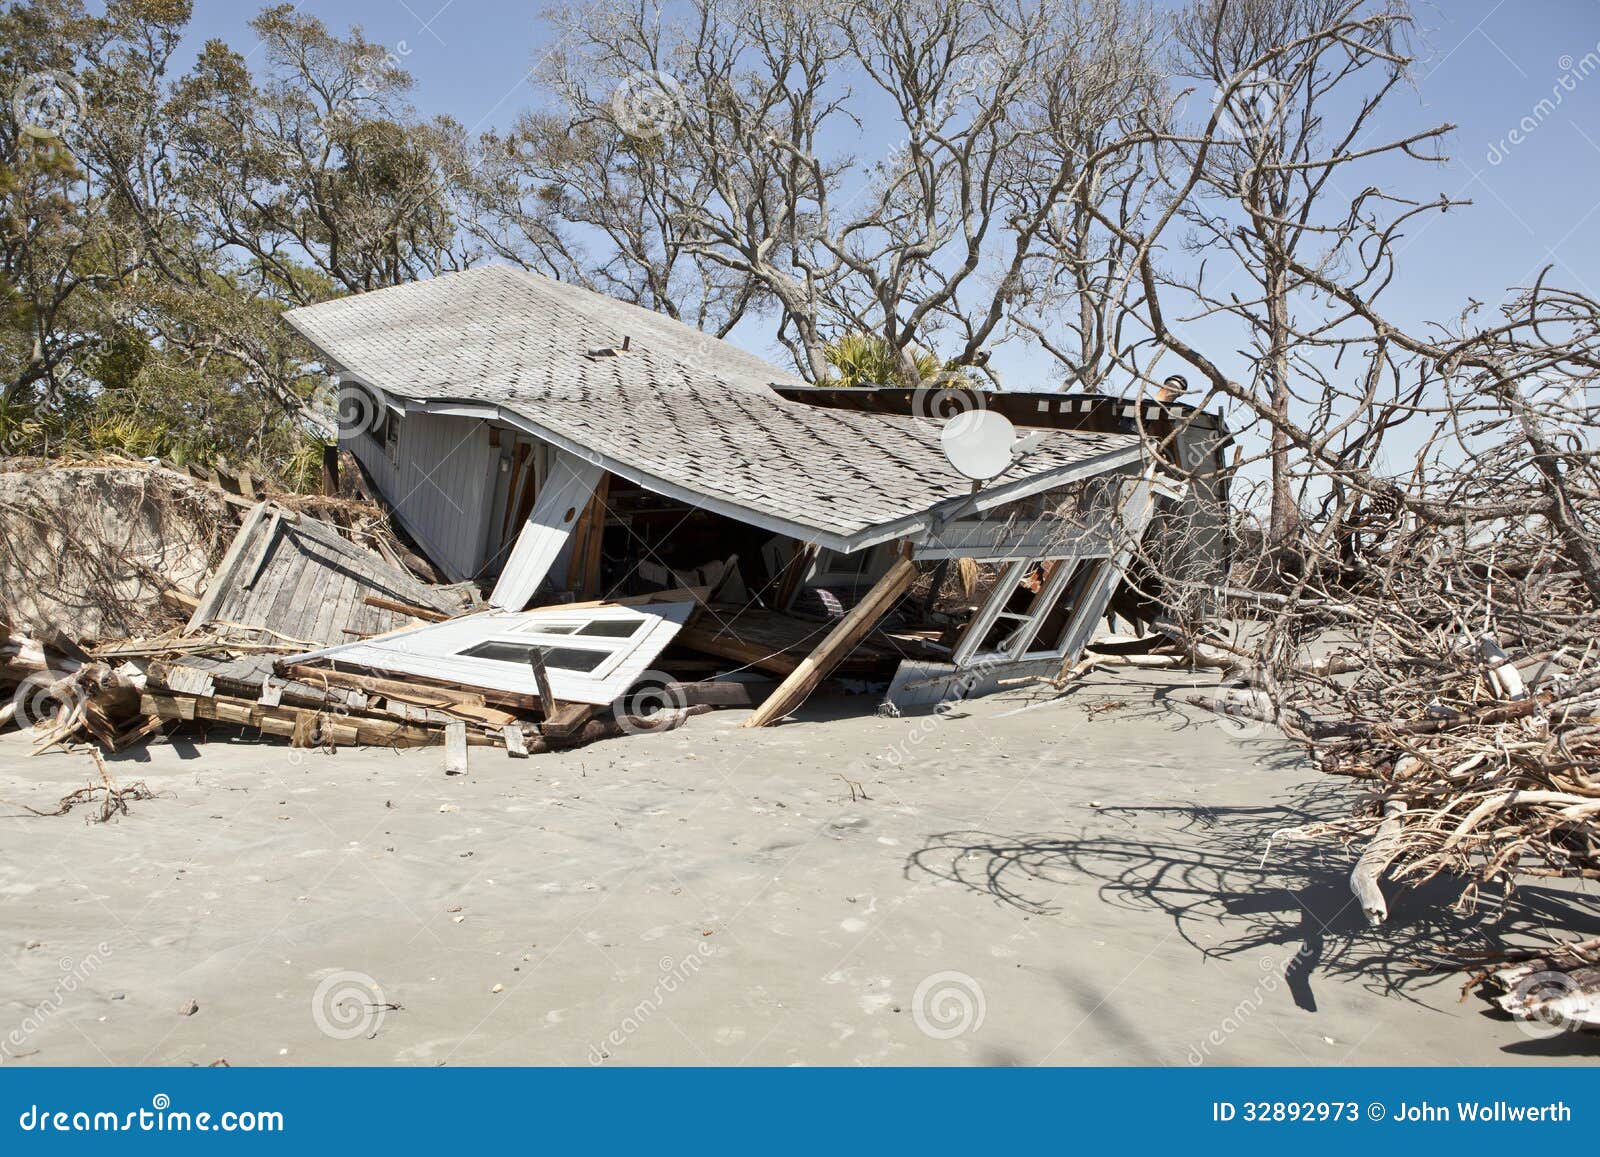 Covid_19 - Venezuela crisis economica - Página 20 Casa-destruida-por-la-inundaci%C3%B3n-32892973